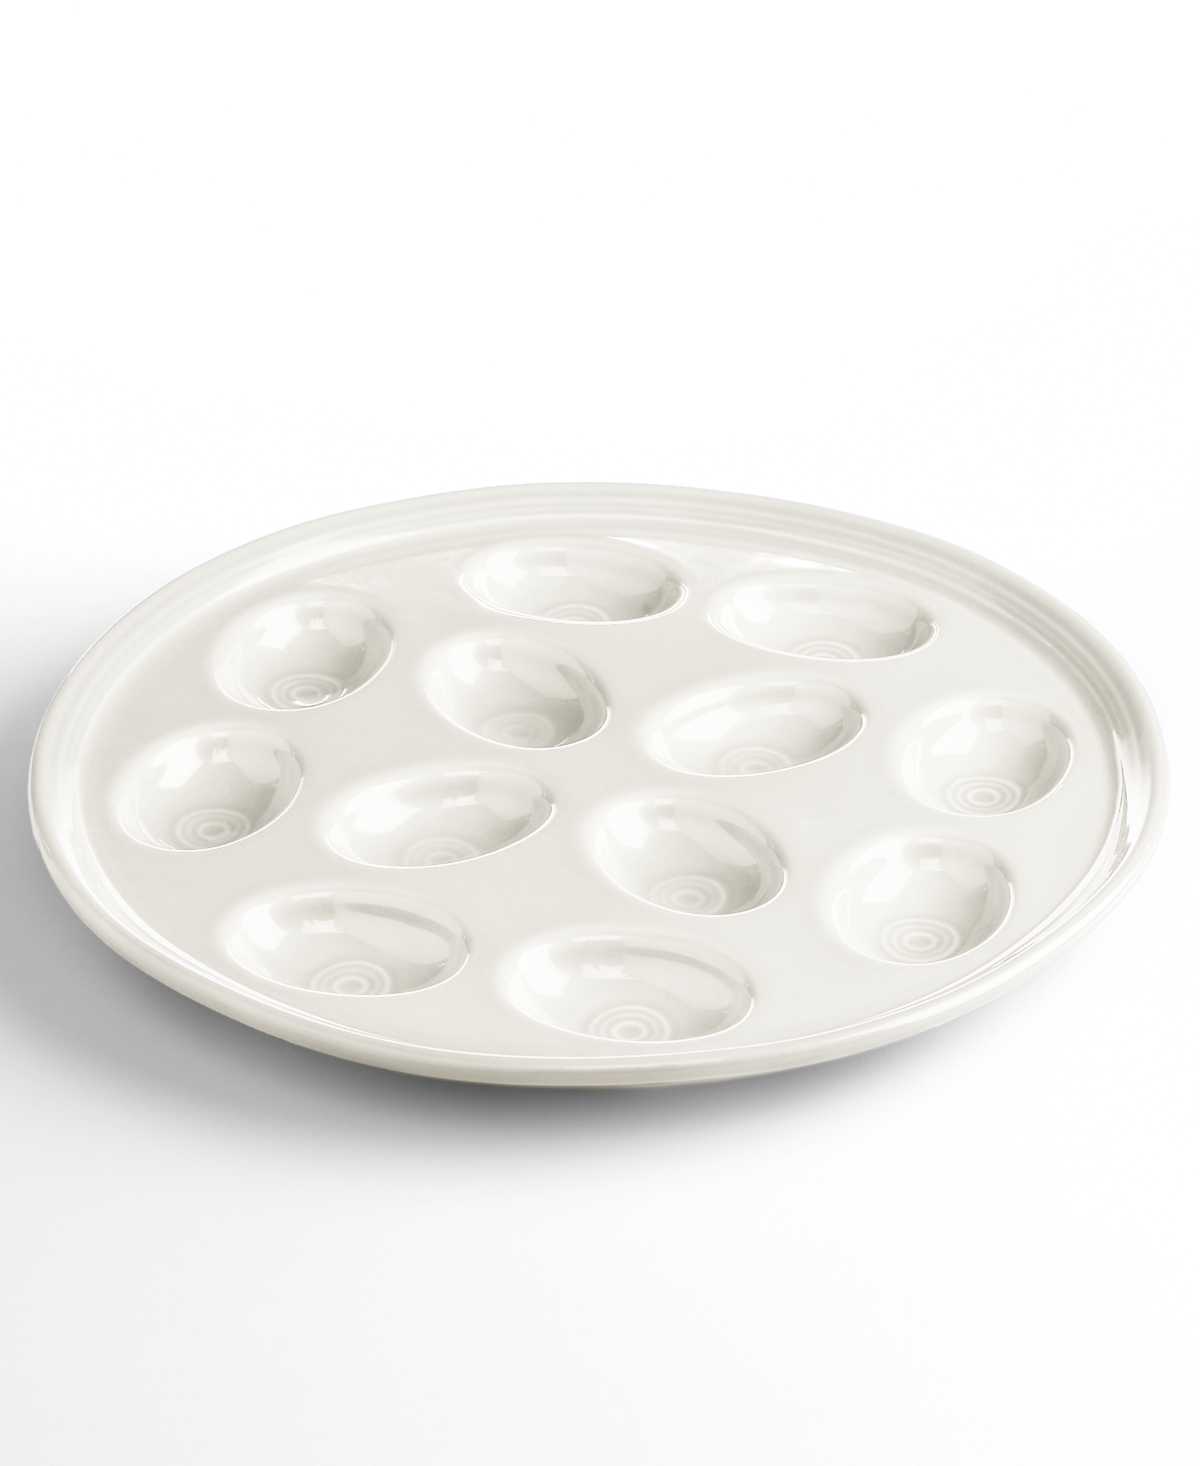 Fiesta Egg Plate In White